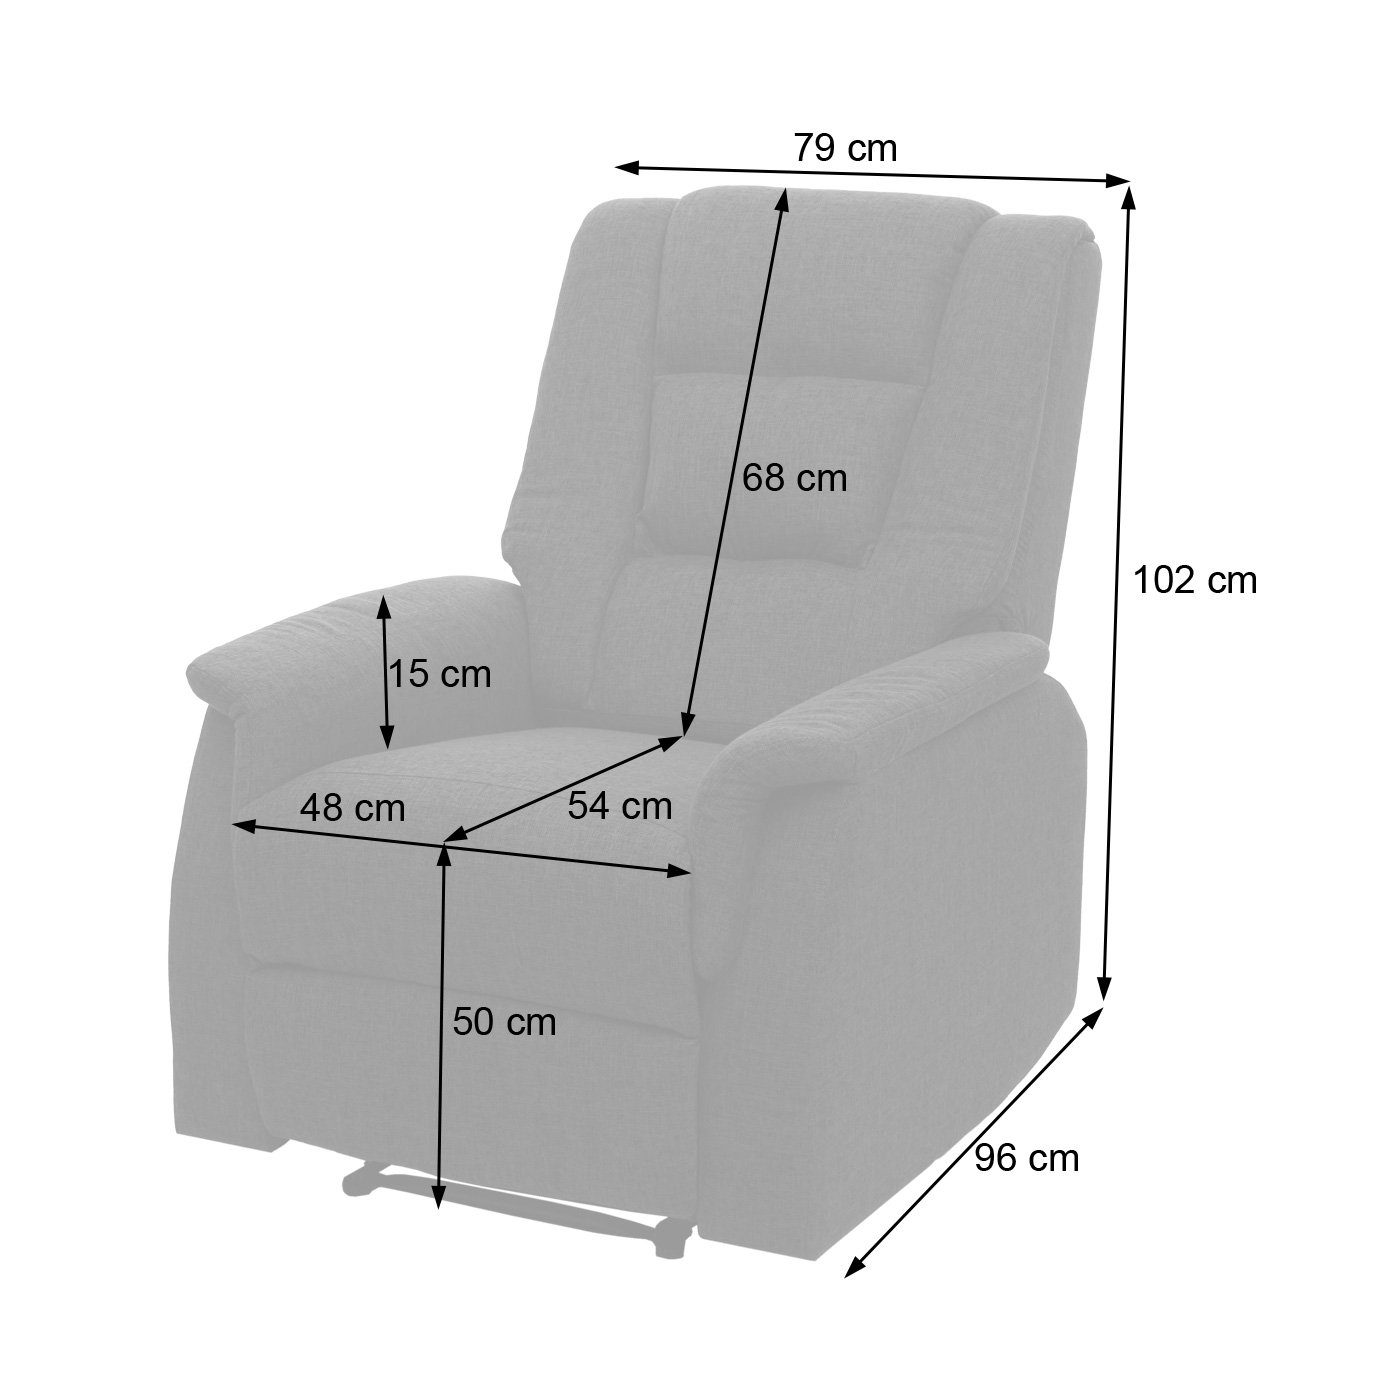 Hebels MCW-F23, TV-Sessel Lösen verstellbar und ohne Besonders des durch Massage- MCW Wärmefunktion, groß, Fußstütze